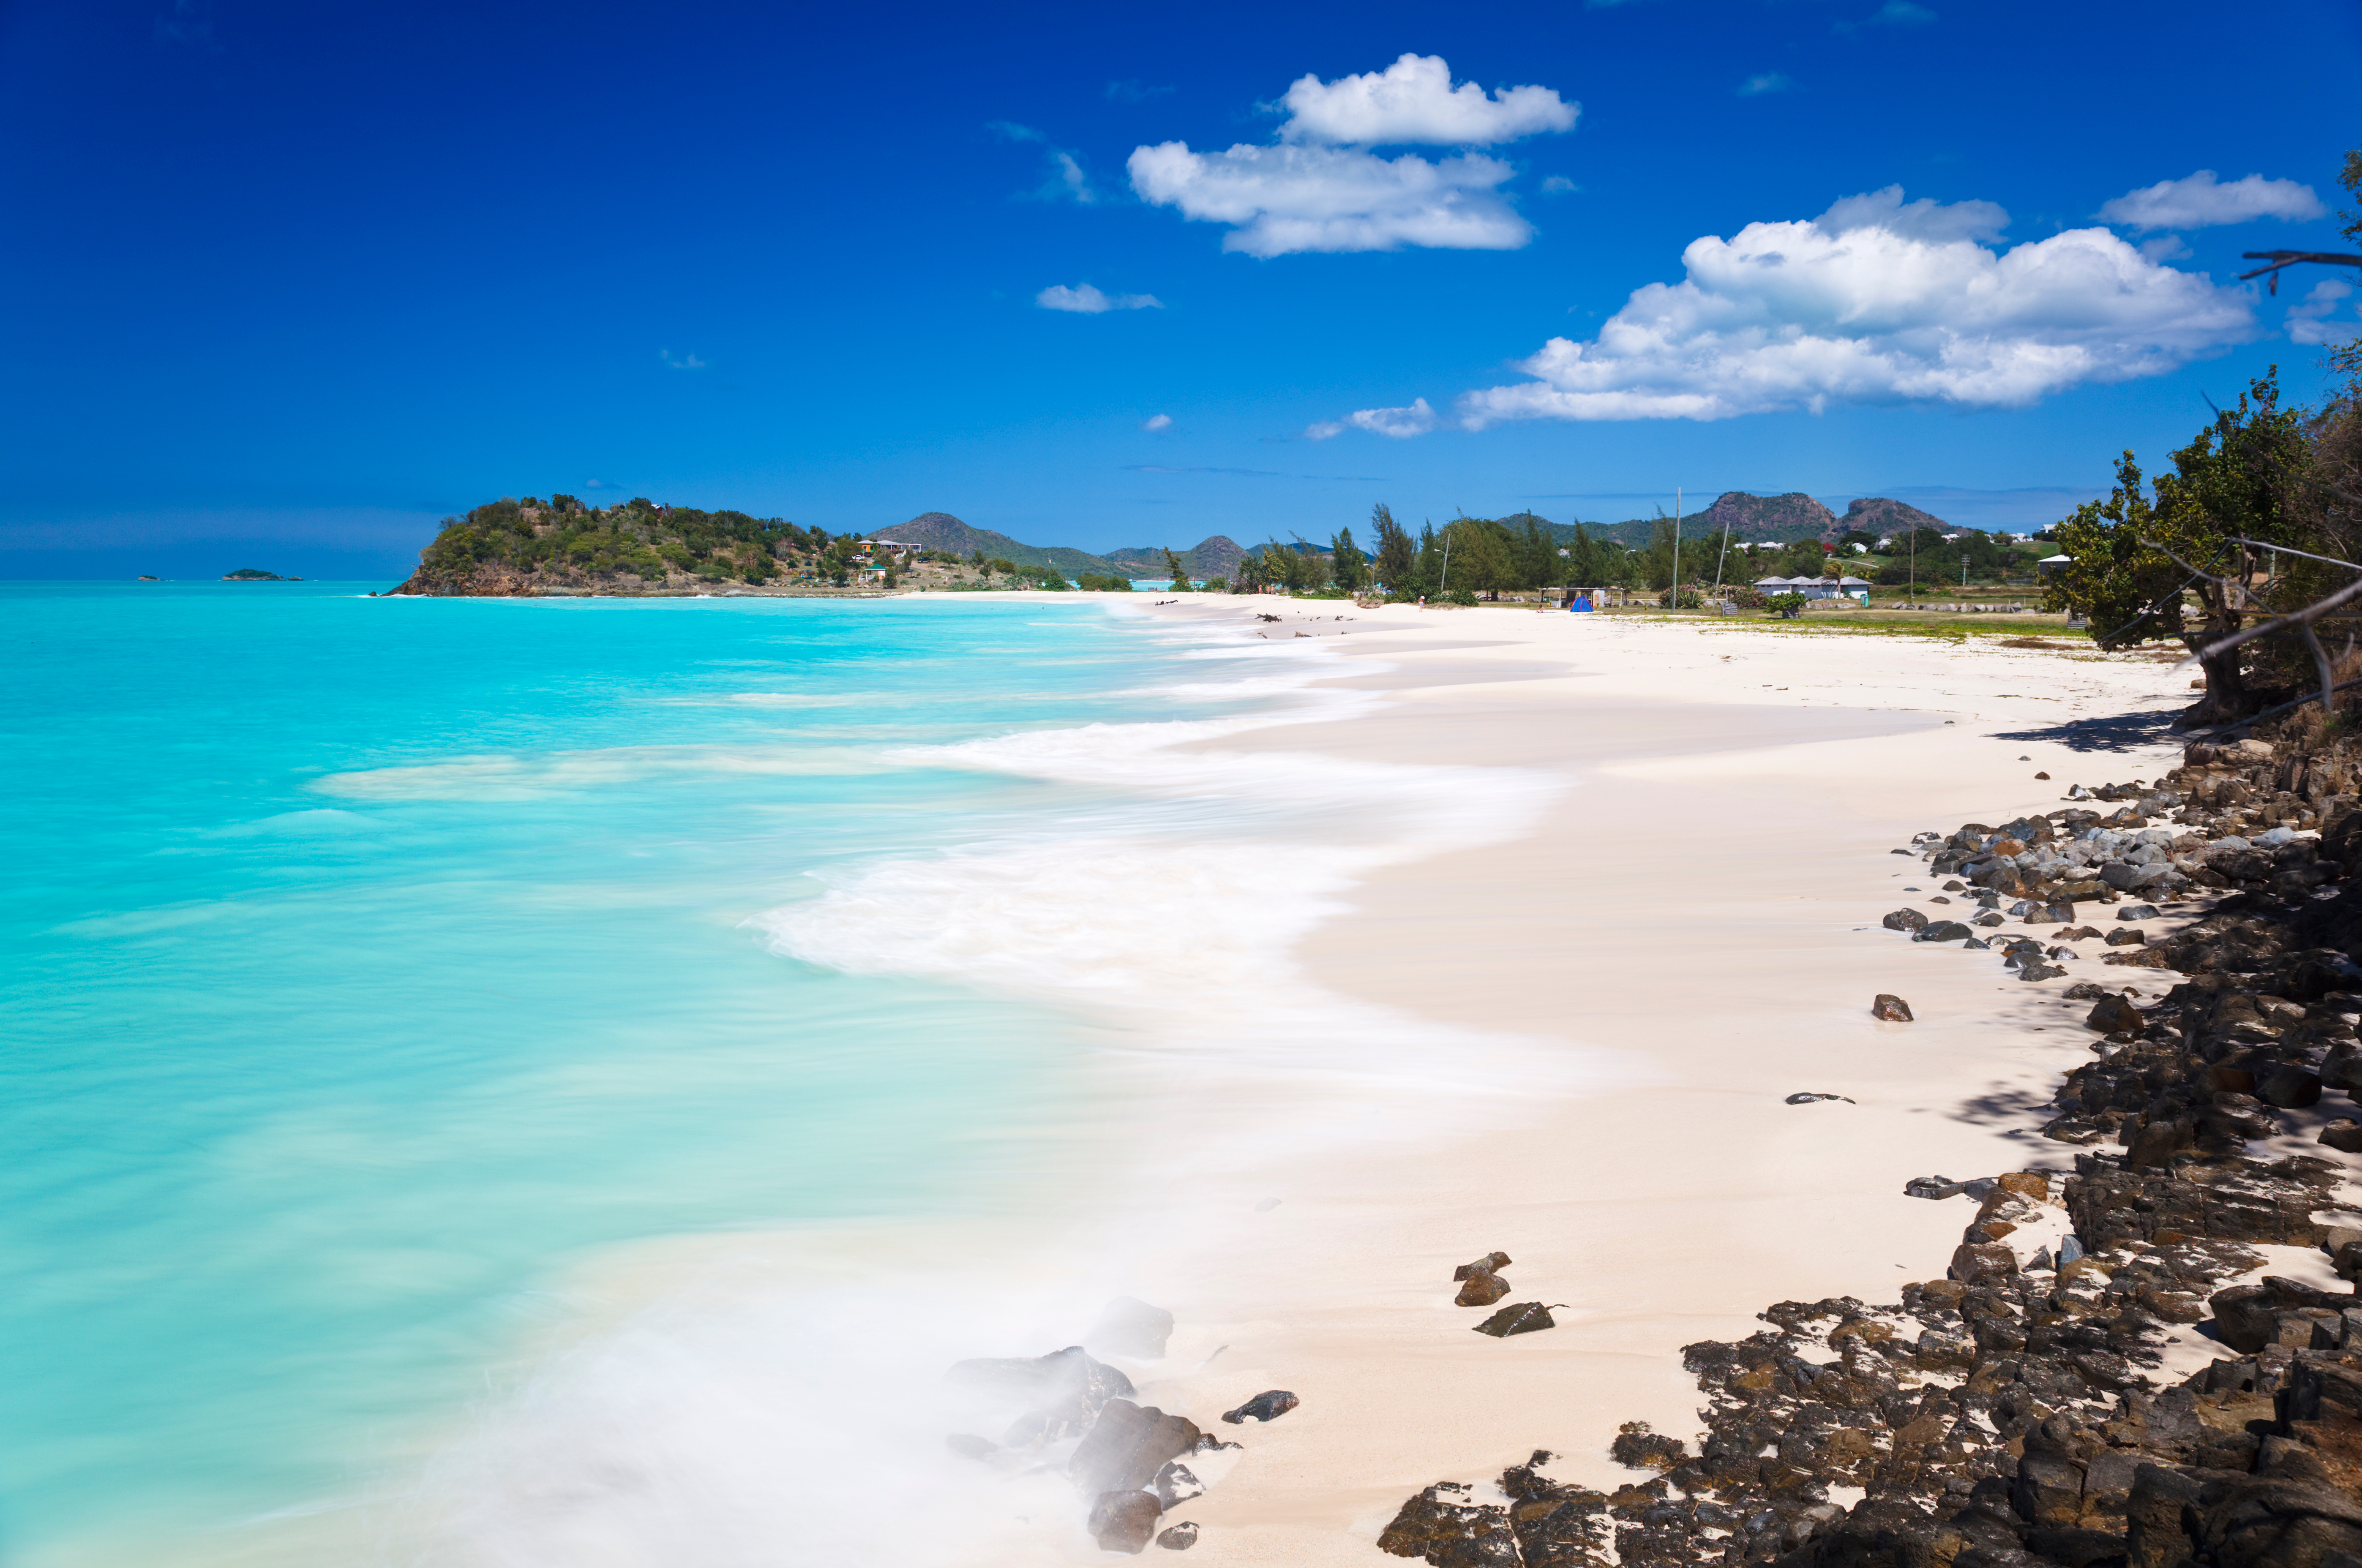 RIF Trust xếp hạng Bãi biển Ffryes trong số những bãi biển tốt nhất ở Antigua và Barbuda.